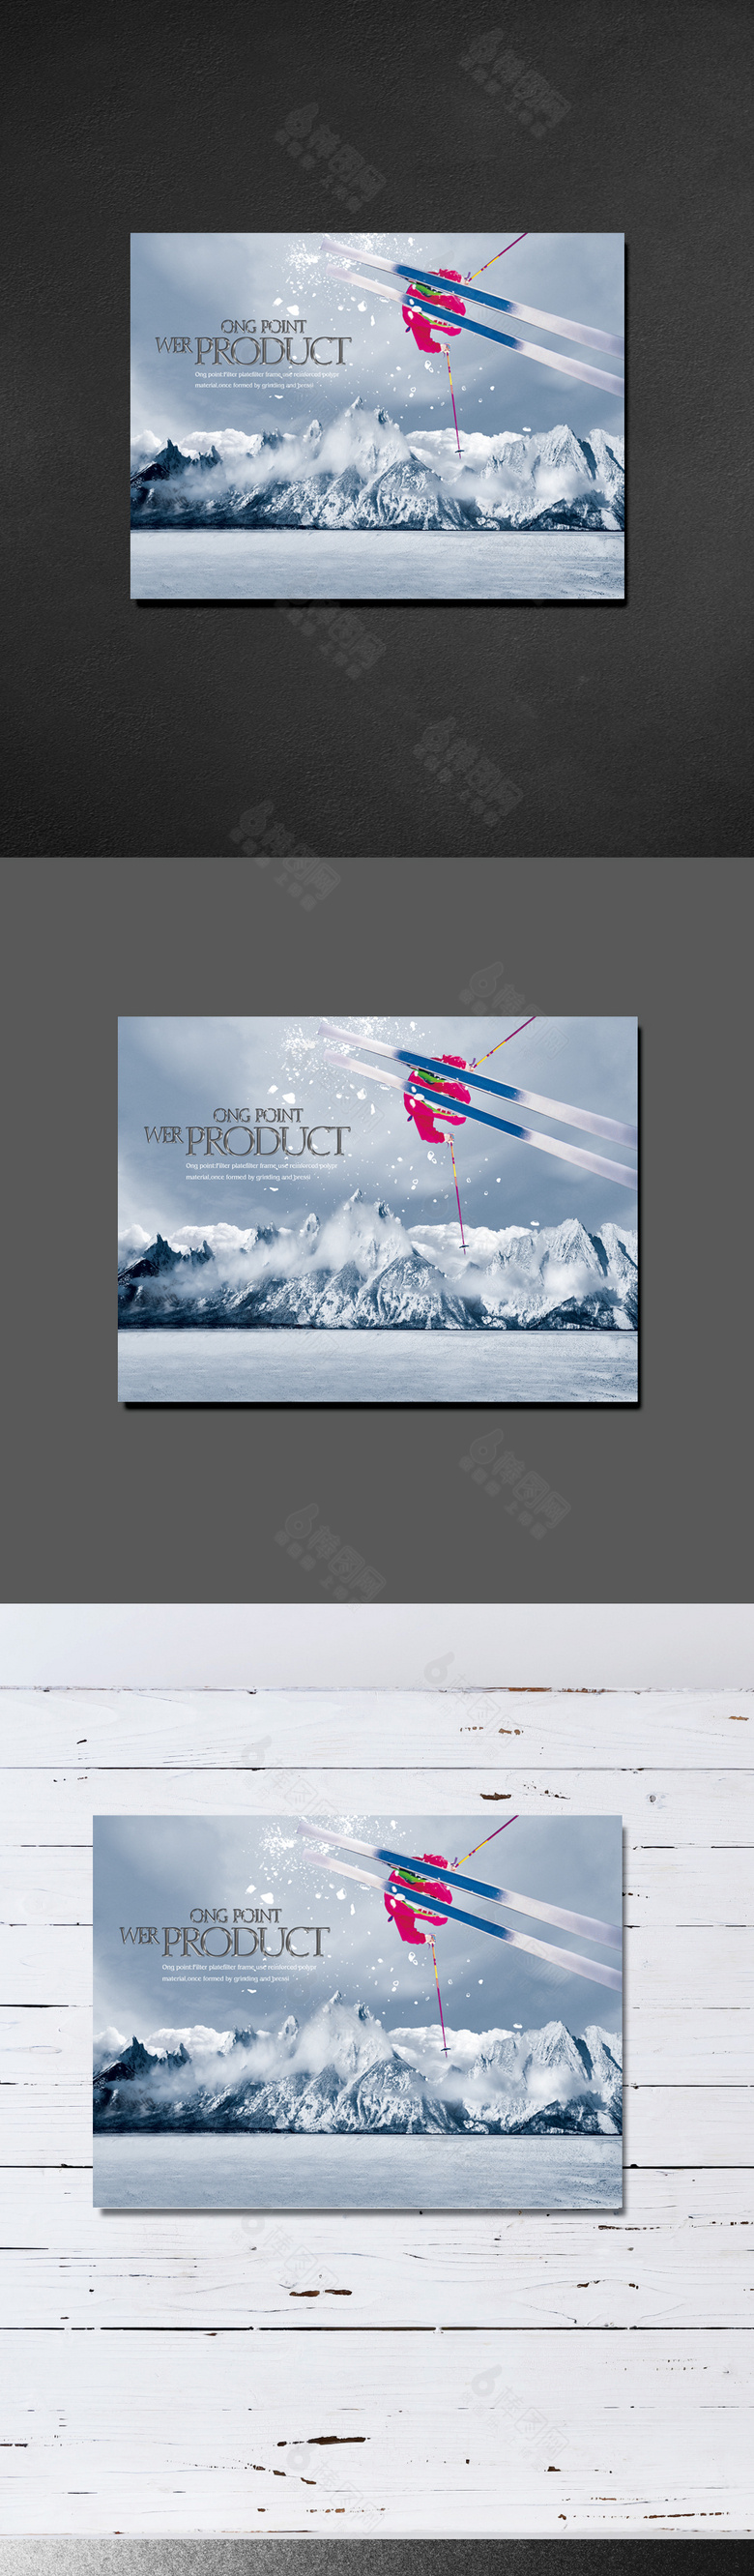 精美滑雪景区旅游封面设计